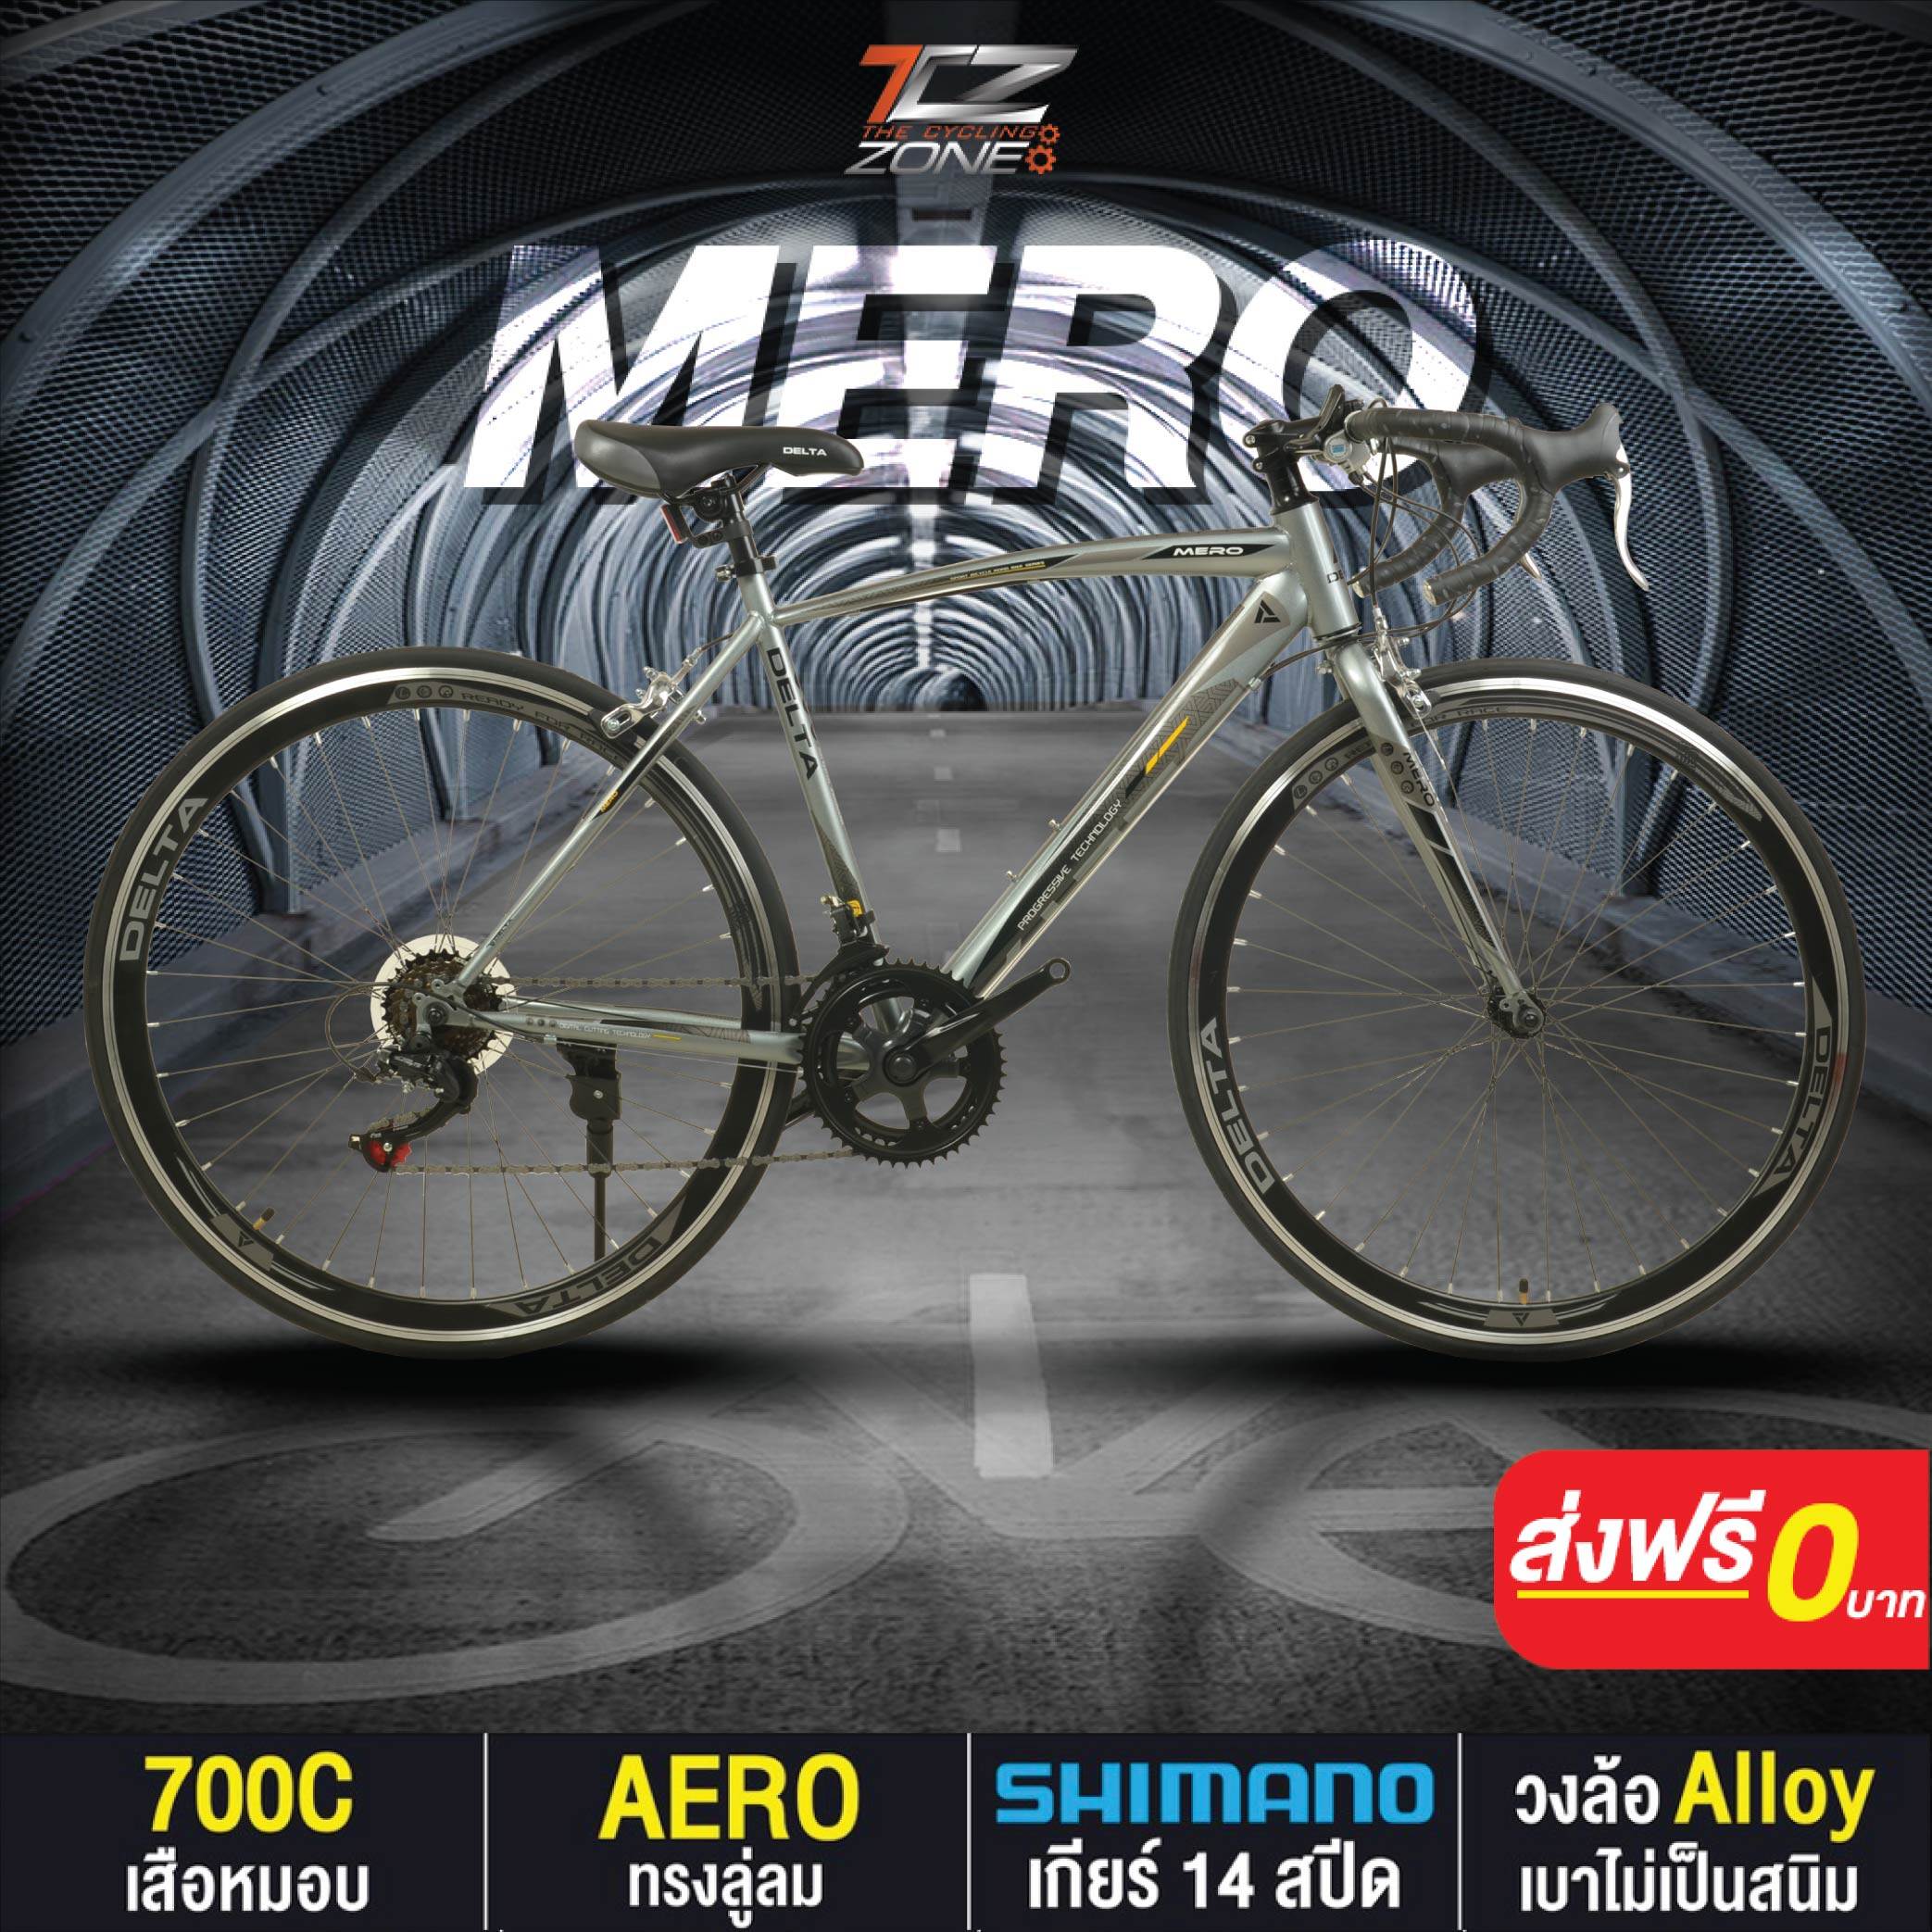 จักรยานเสือหมอบ 700C / DELTA เกียร์ SHIMANO 14 สปีด / ไซส์ 49 / รุ่น MERO สีเทา